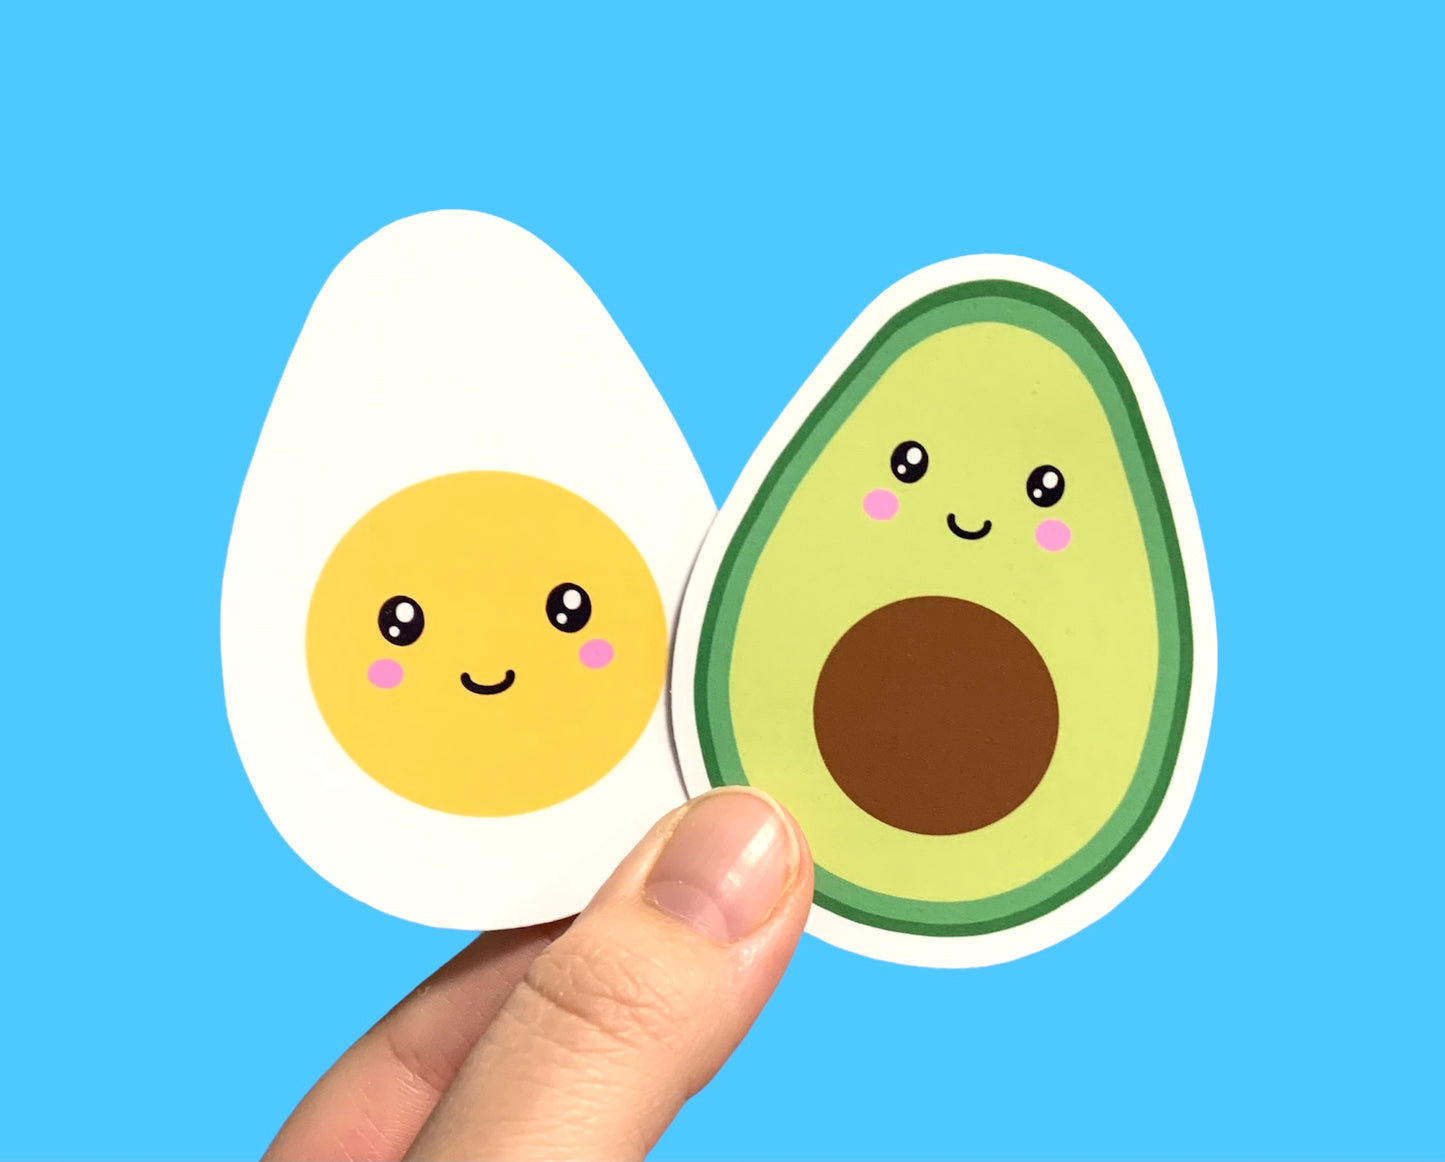 Egg and avocado stickers